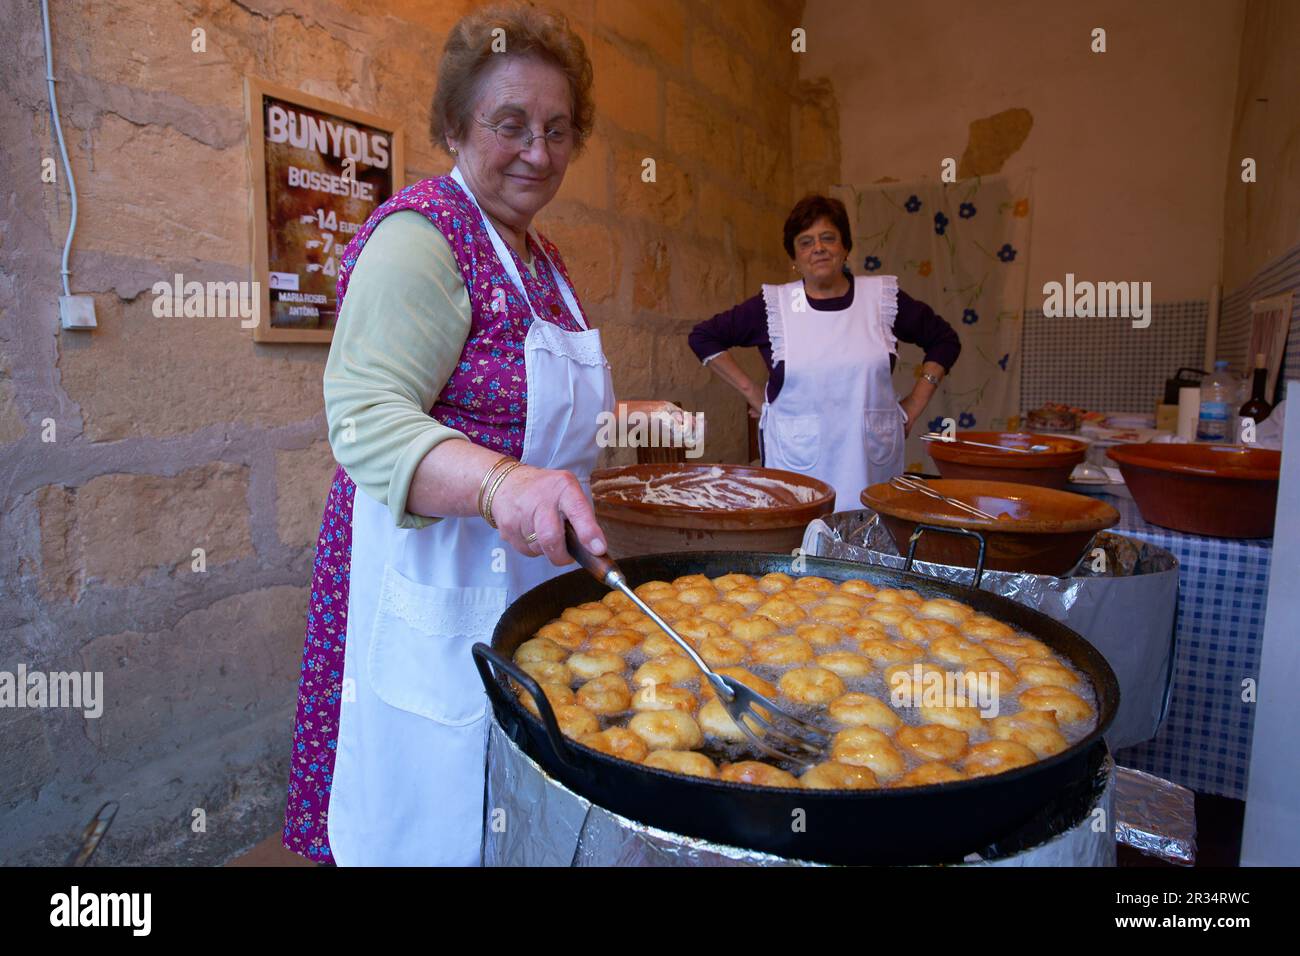 Cocina artesanal de Buñuelos.Petra. Es pla.Mallorca.Islas baleares.España. Stock Photo